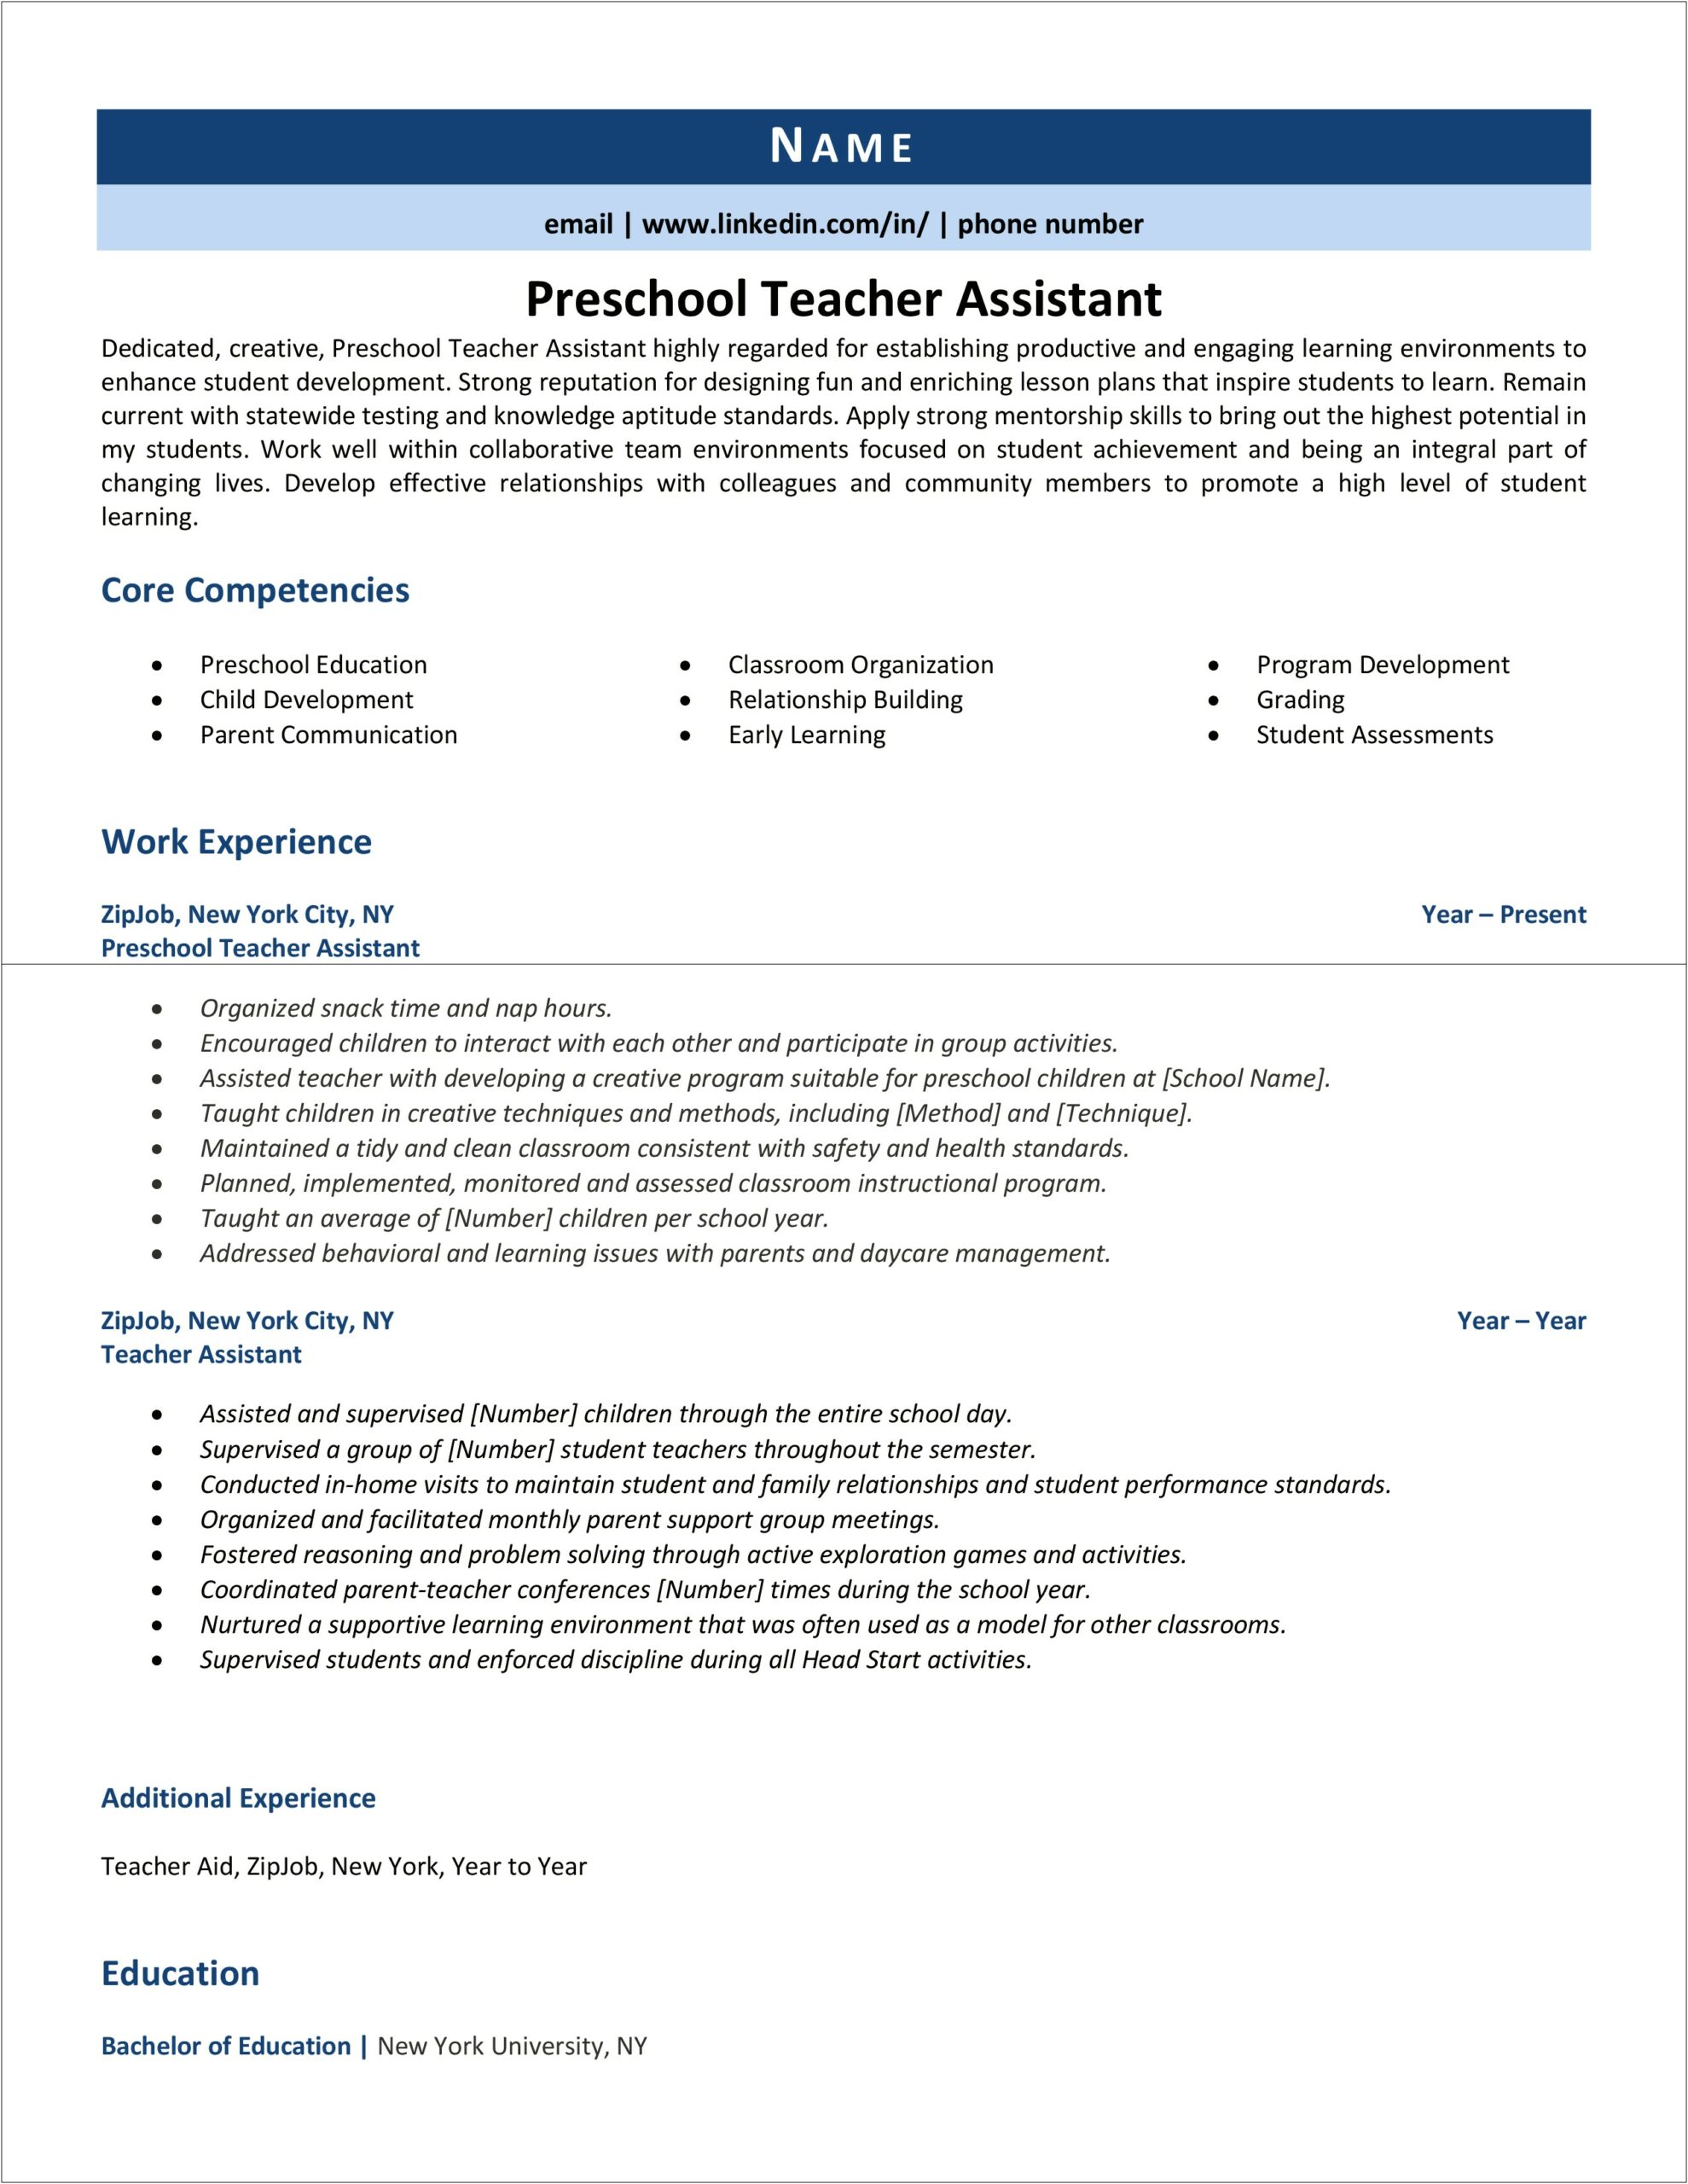 Preschol Teacher Job Duties For A Resume